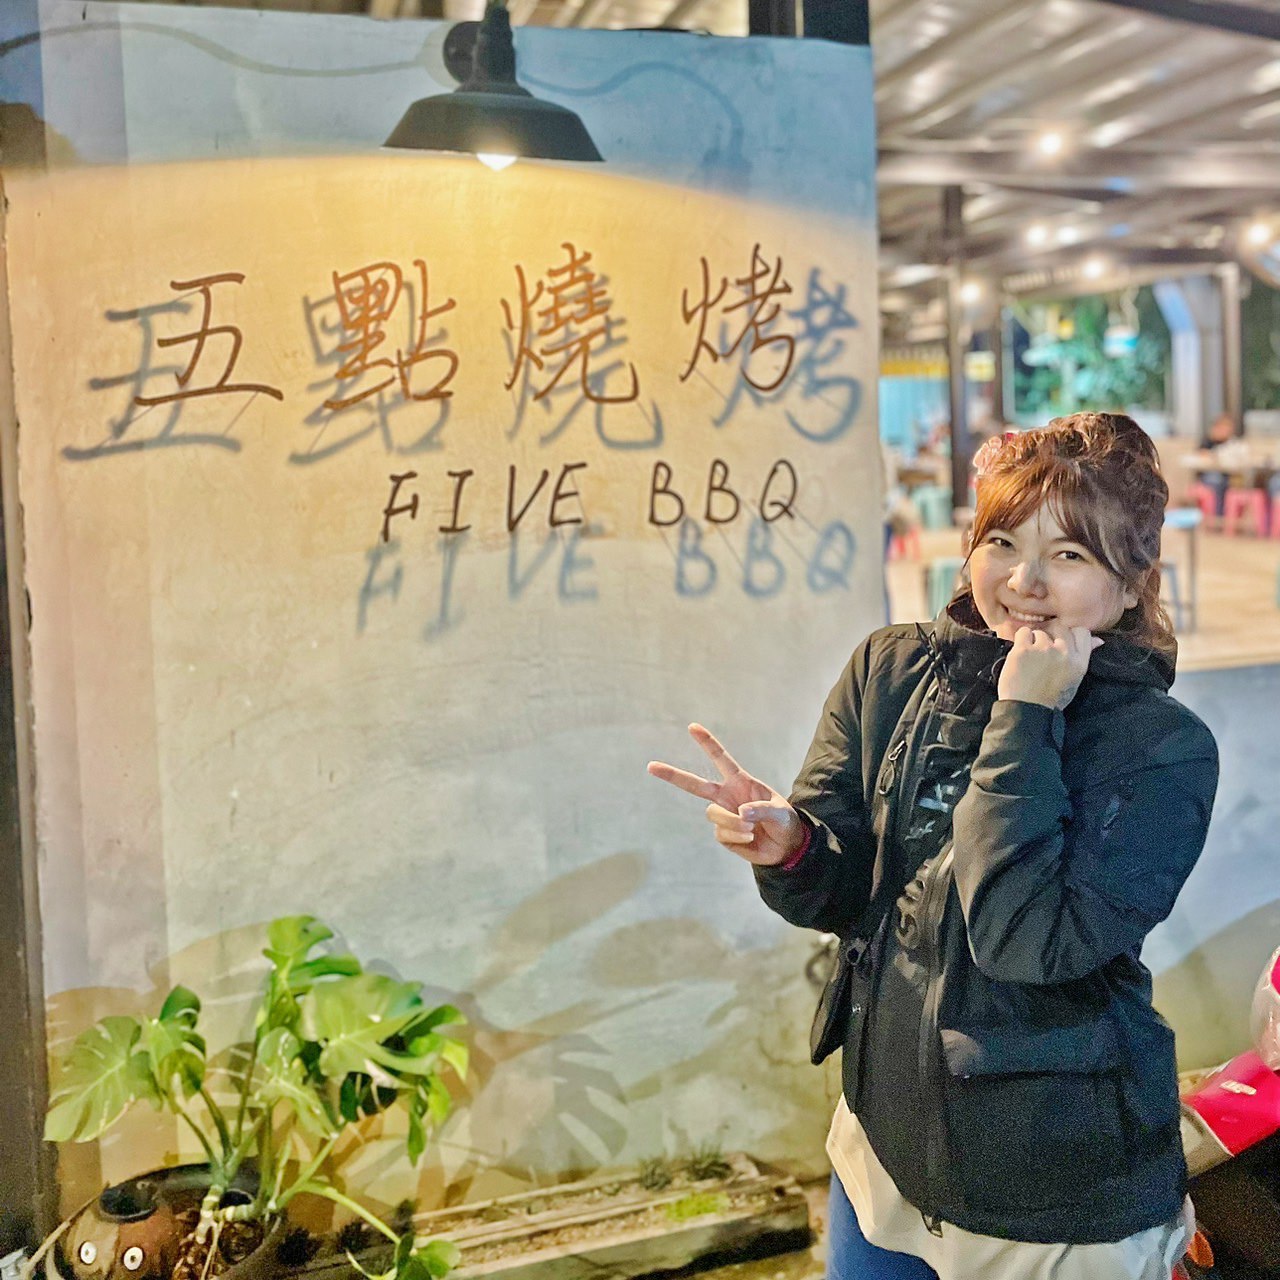 小琉球五點燒烤 吃到飽推薦無煙燒肉 Google 千則評論4.1